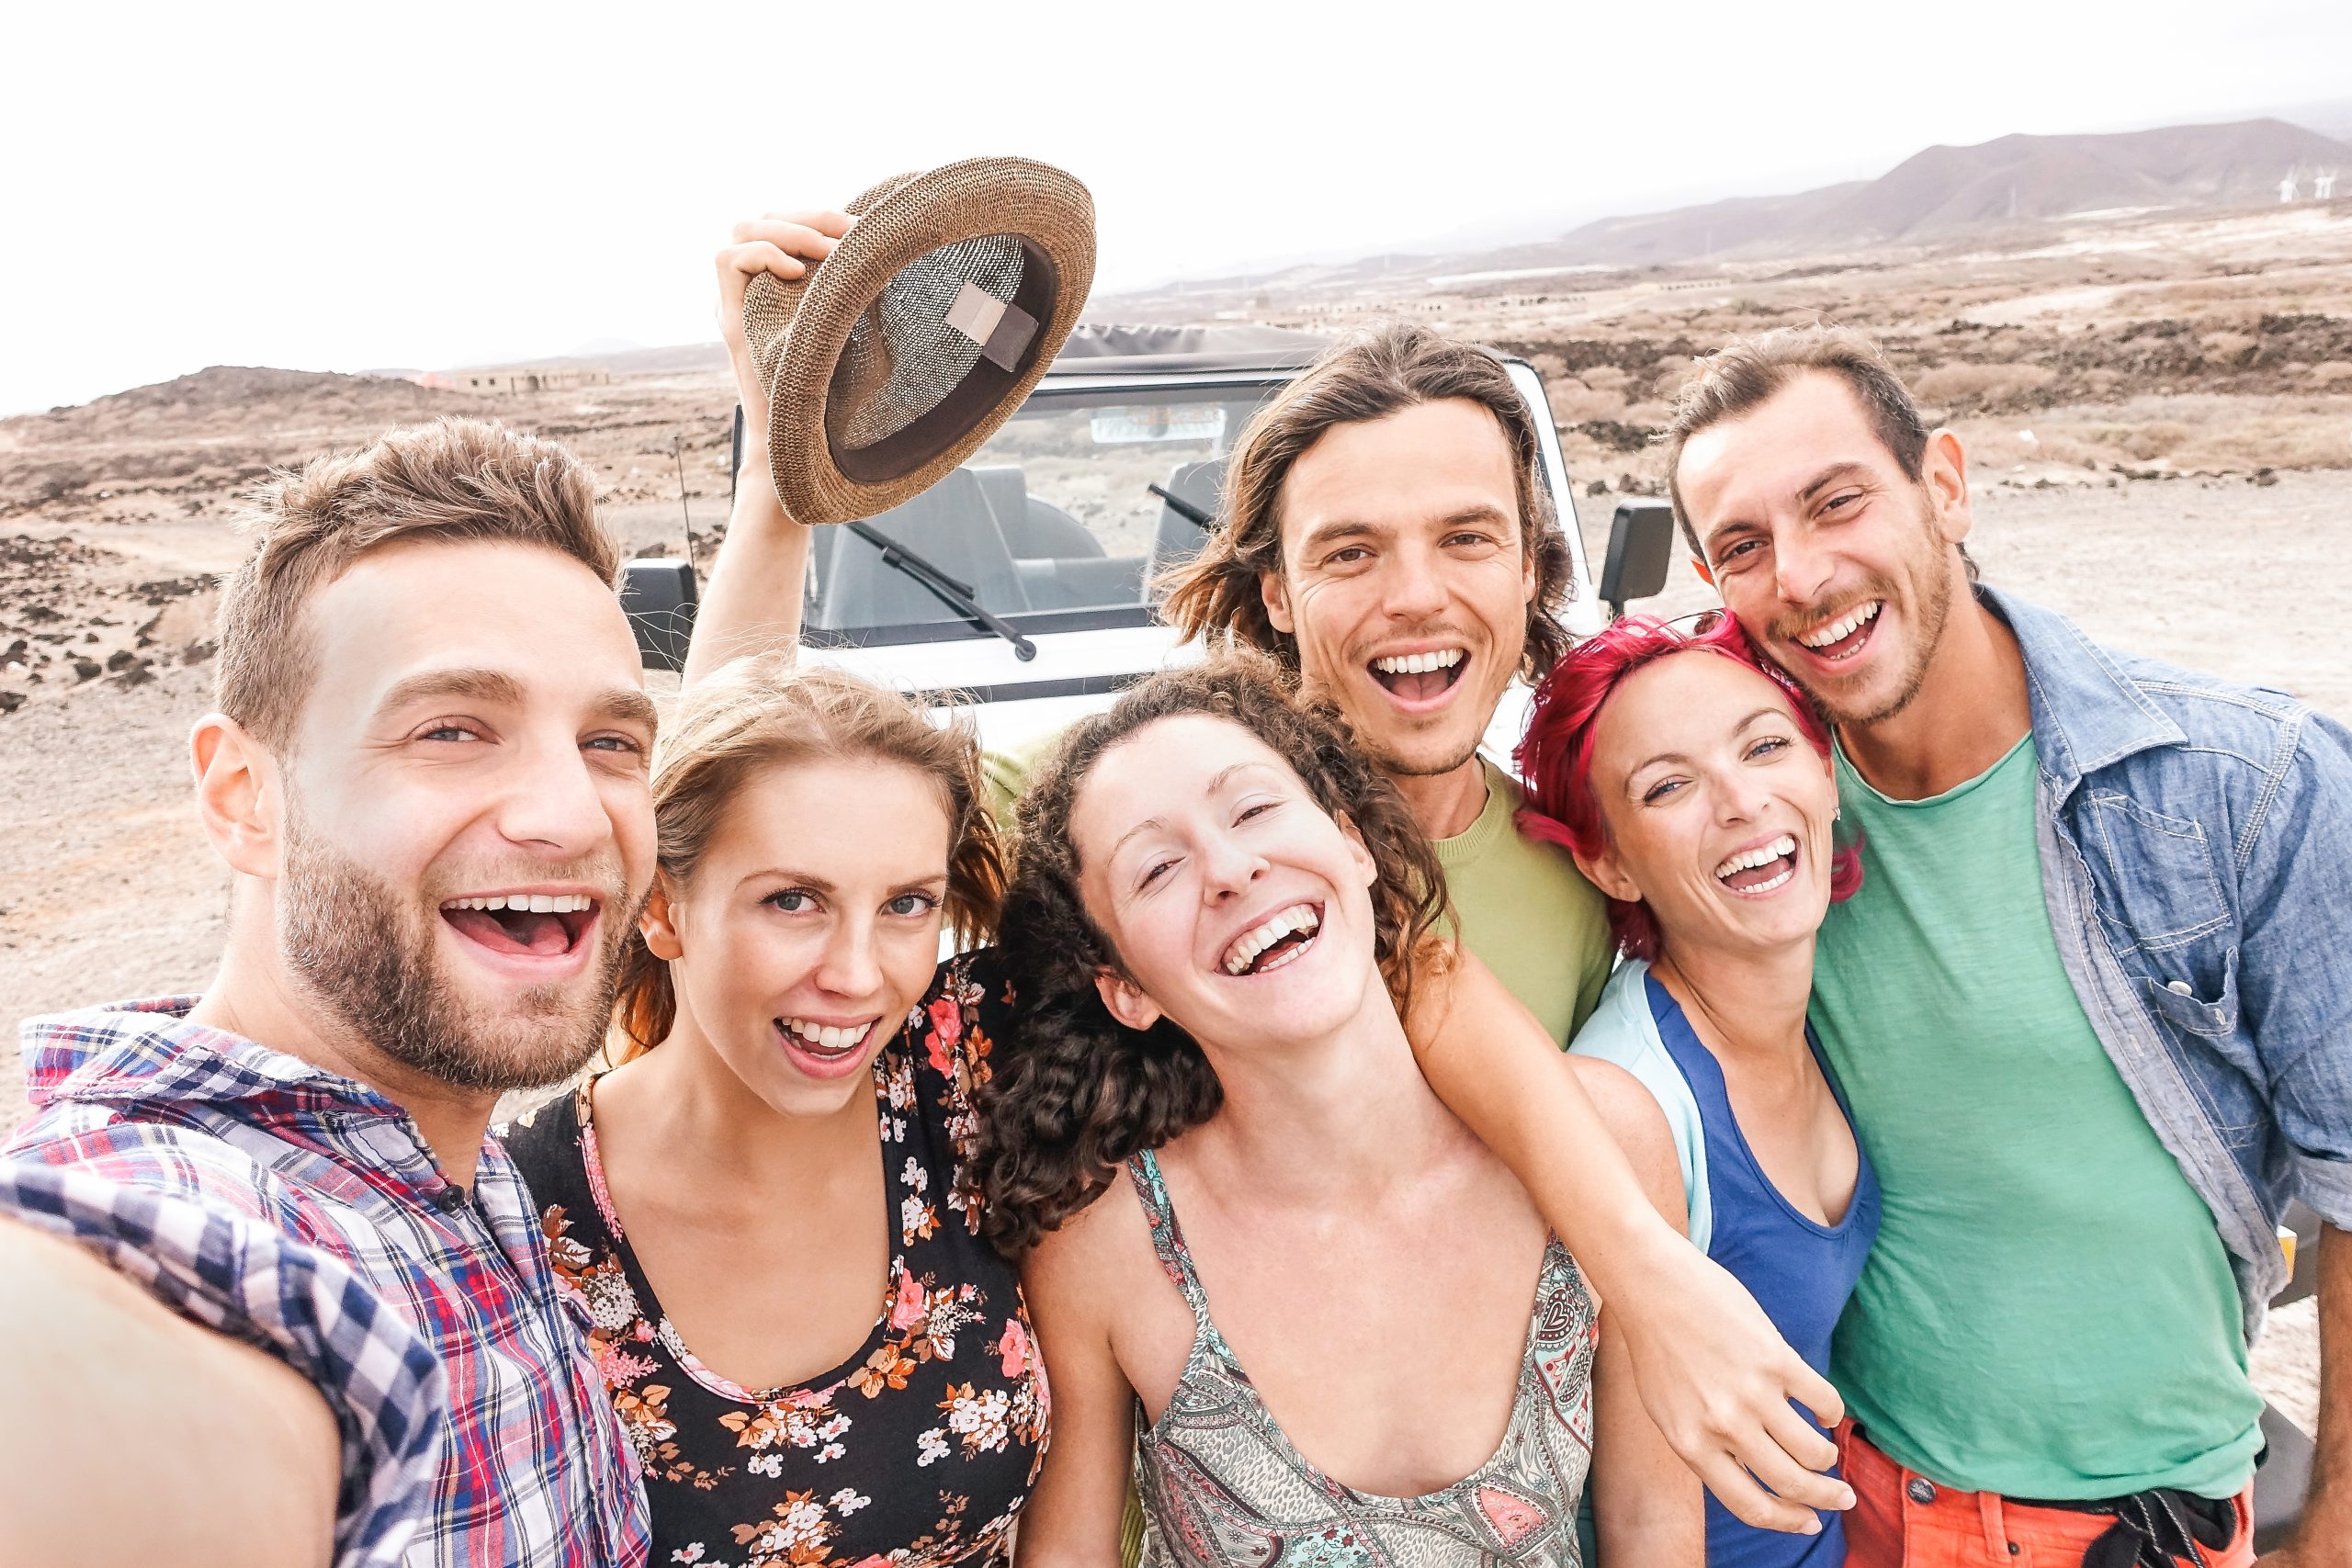 Selfie тур. Дорогие путешествия с друзьями. Группа друзей на отдыхе. Селфи в пустыне. Активные молодые люди.